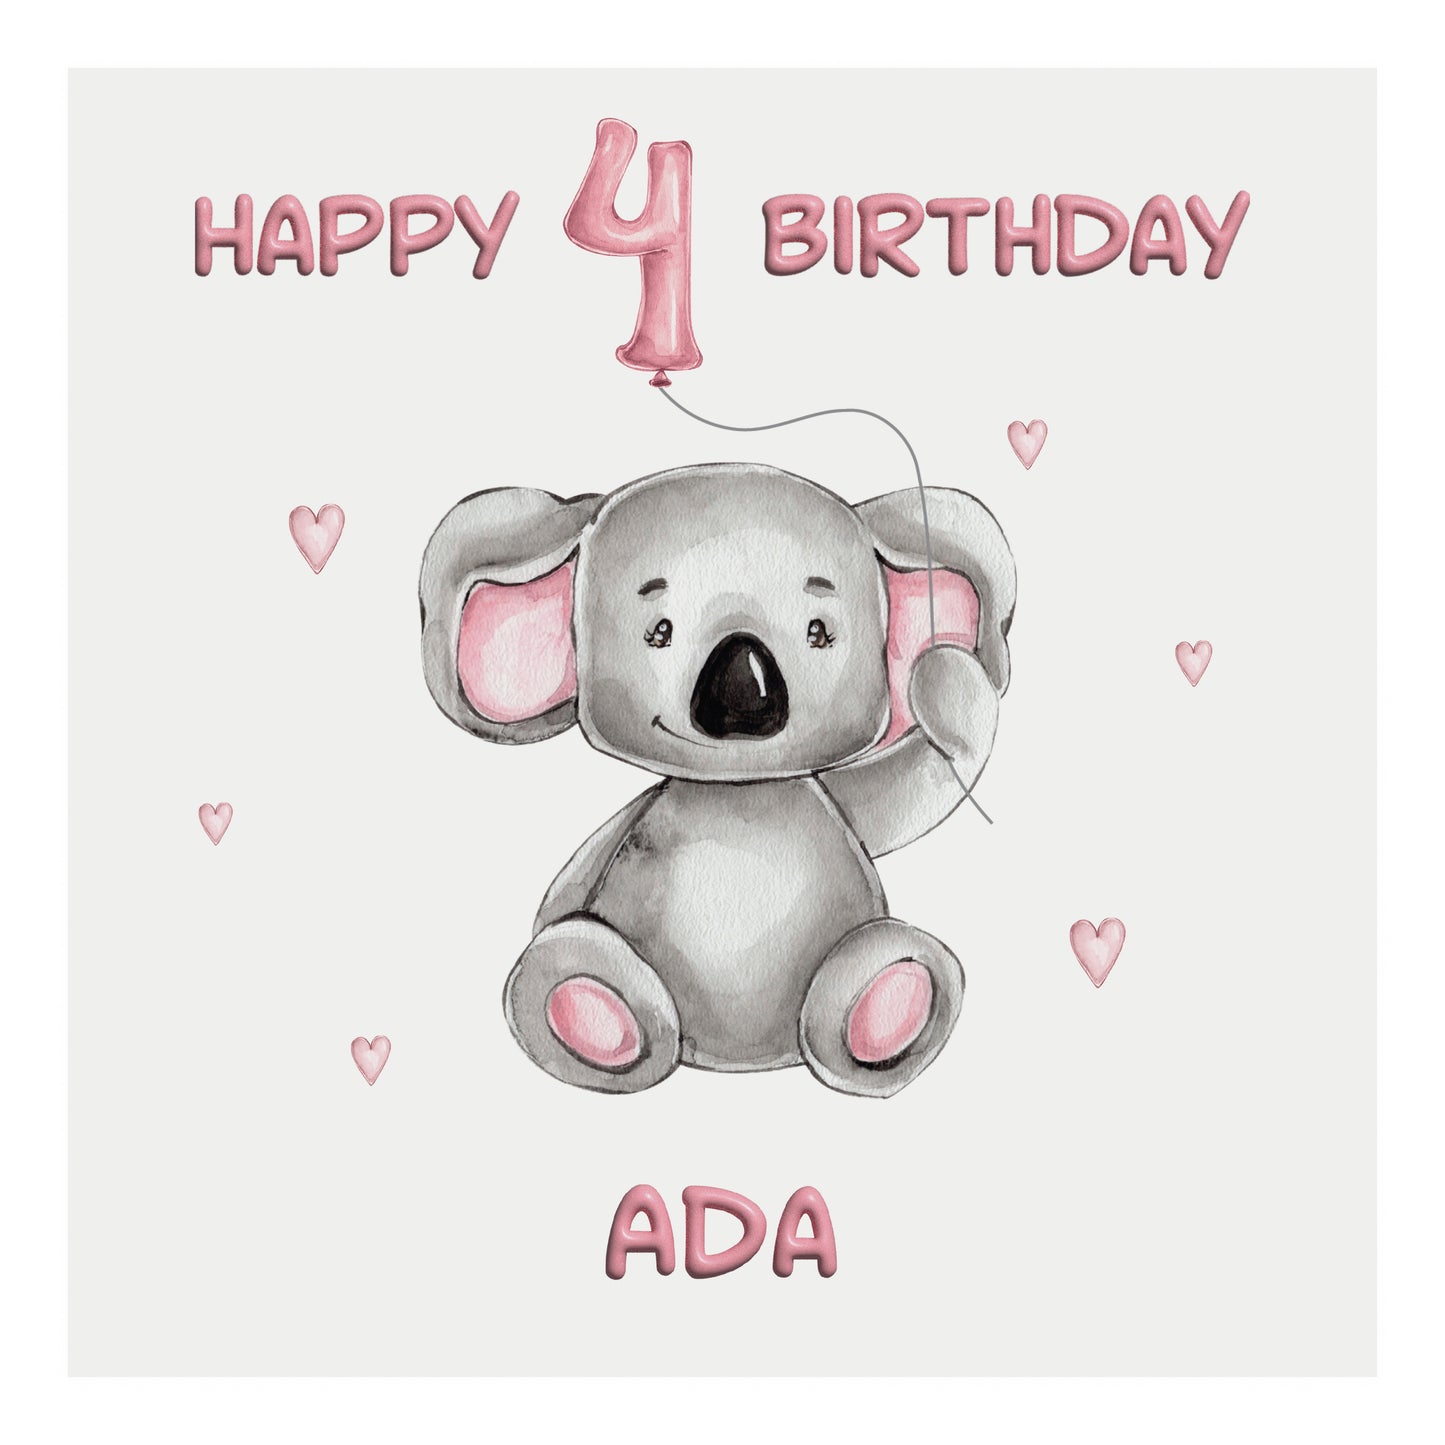 Personalised Birthday Card Balloon Animals (Koala)